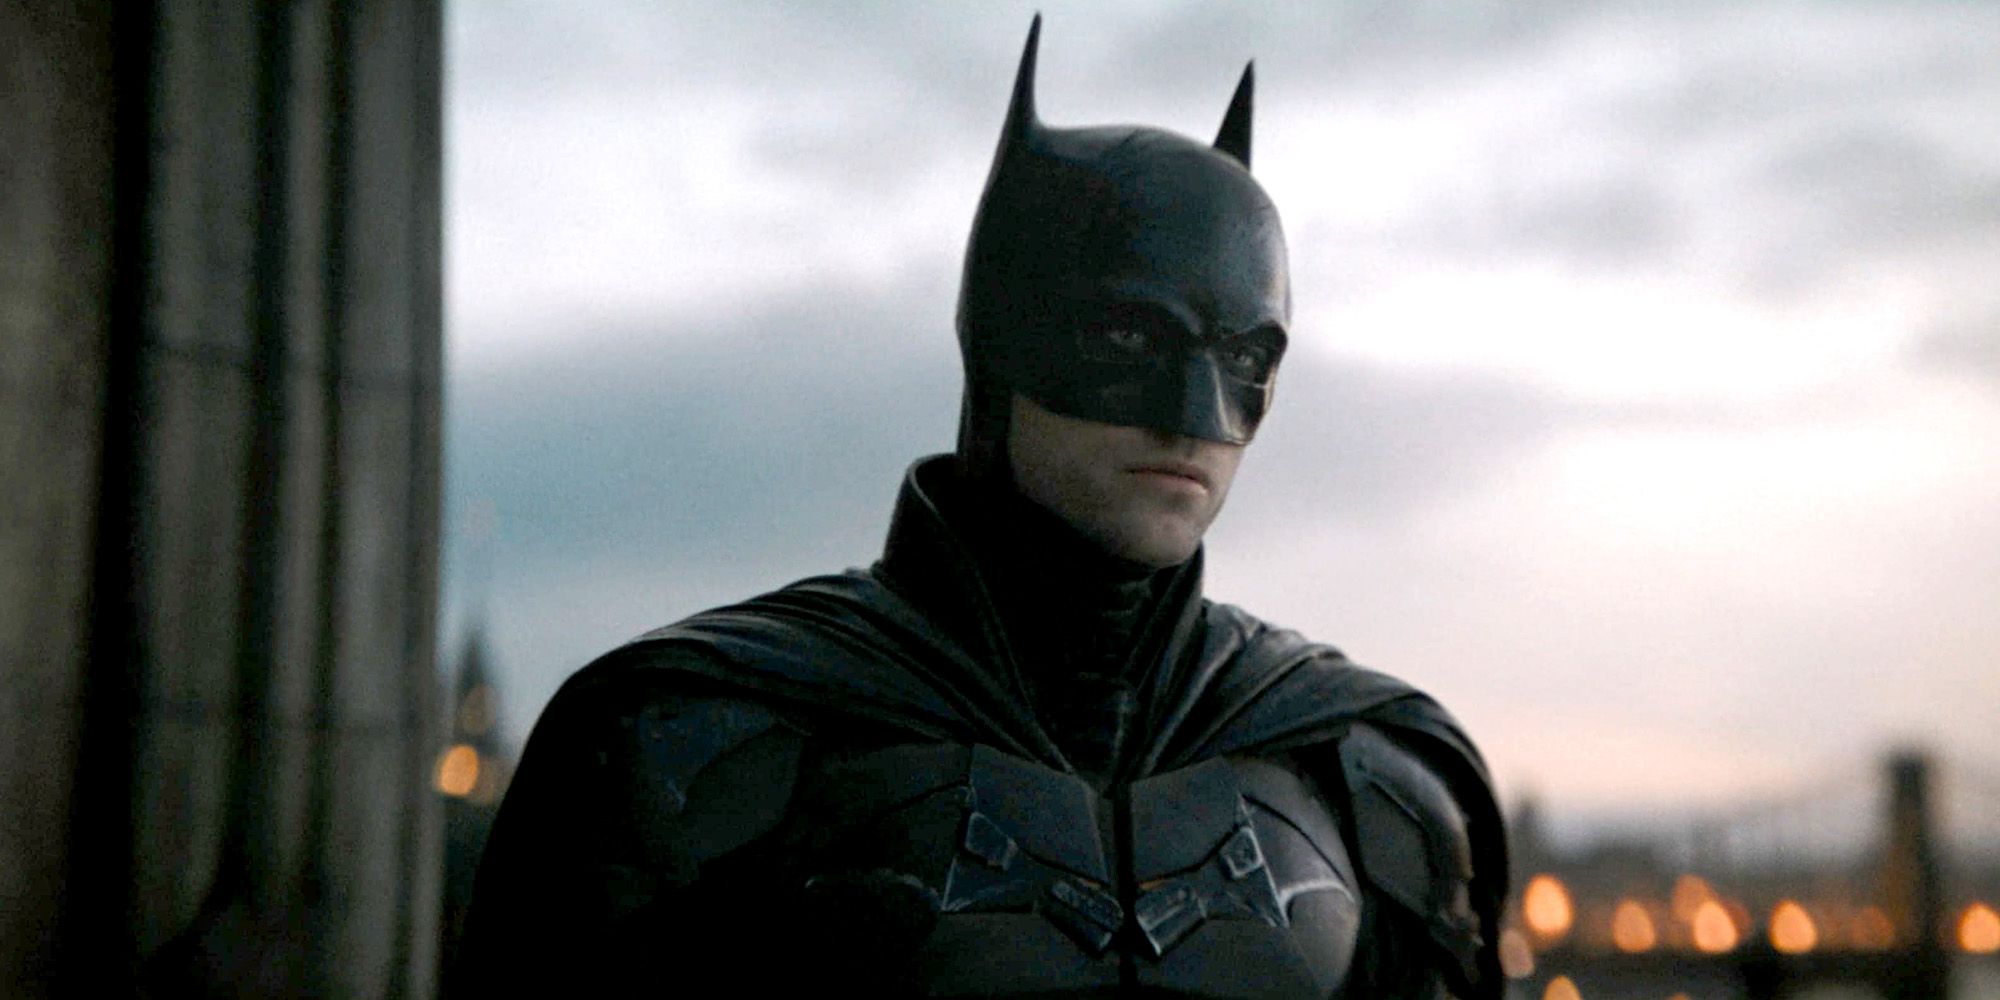 Robert Pattinson as Batman standing on a rooftop